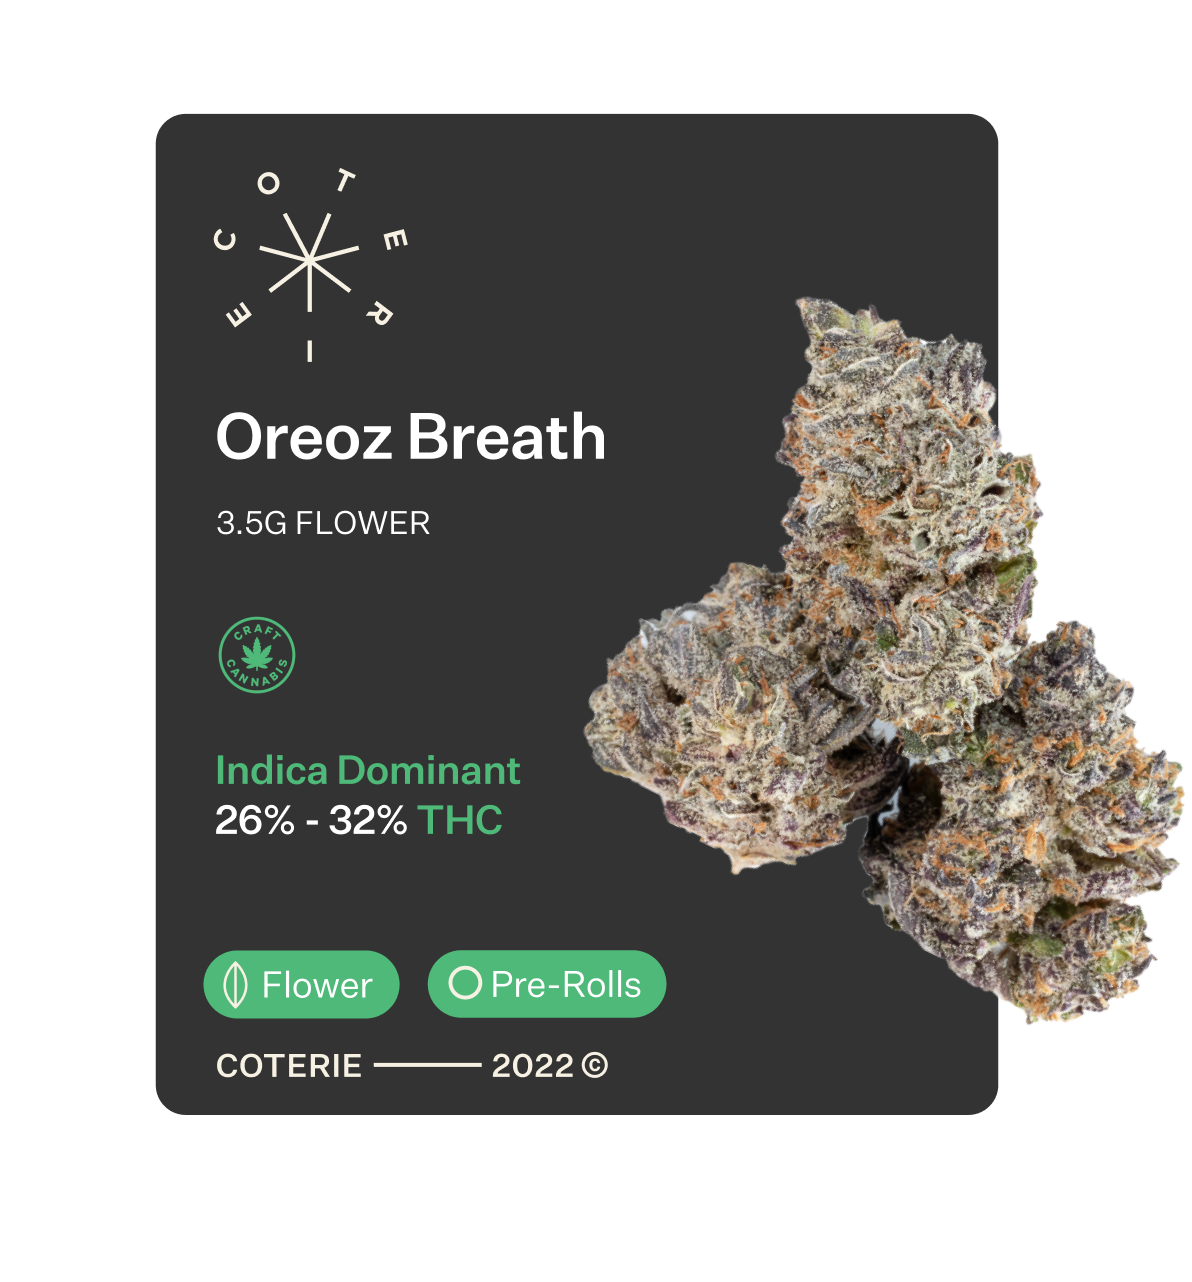 Mendo Breath
            Hybrid Coterie Brand